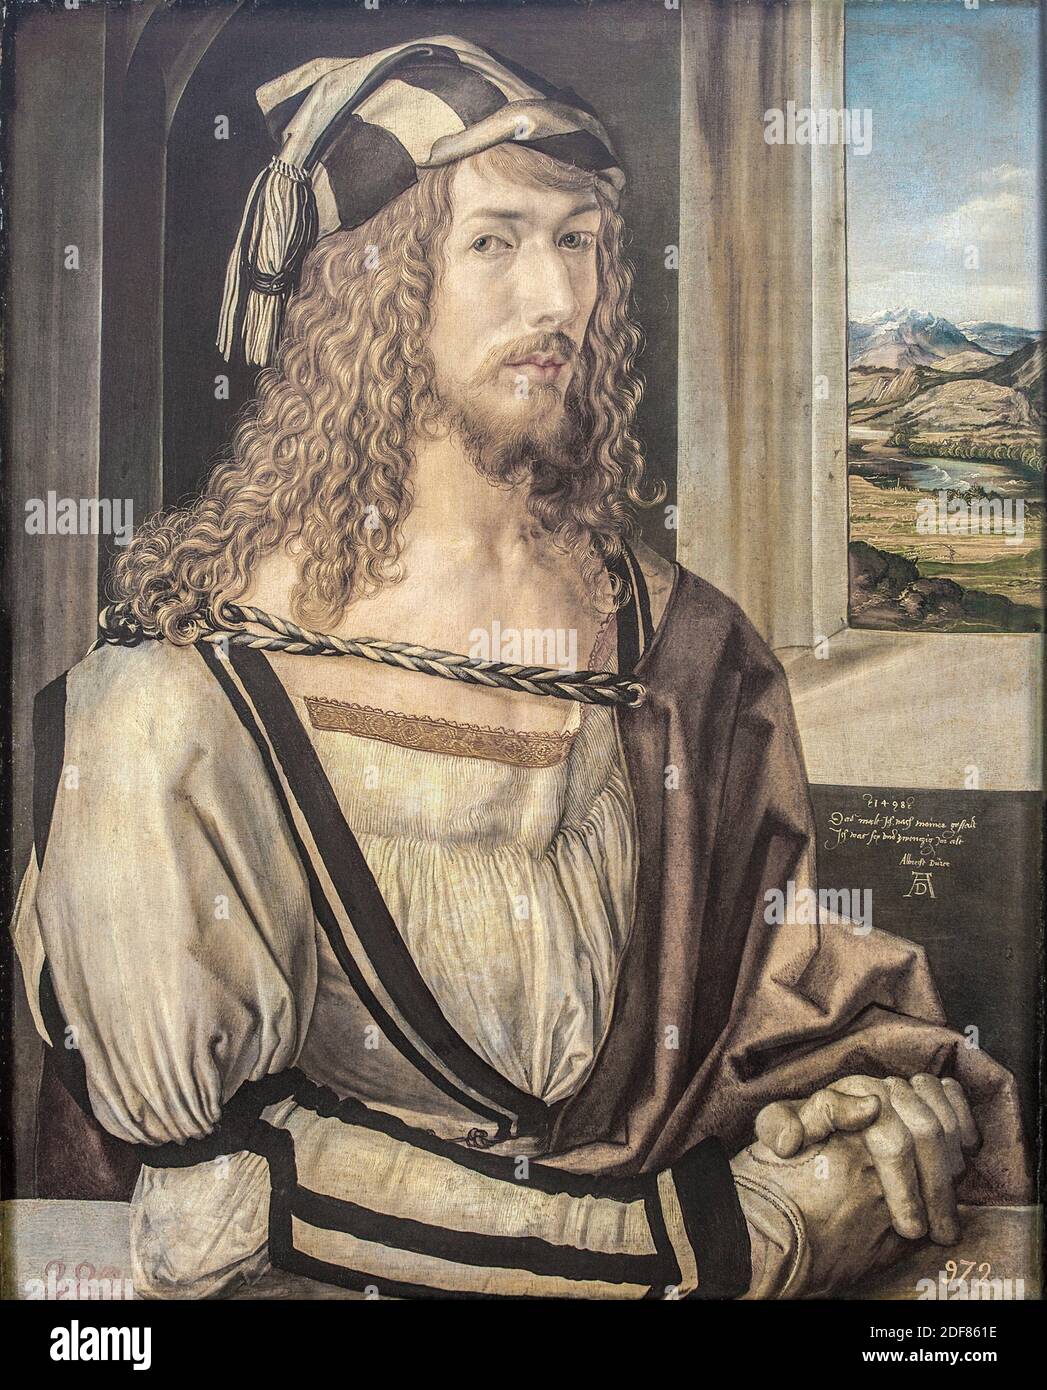 Self Portrait of Durer, Durer, Albrecht, 1498 Stock Photo - Alamy